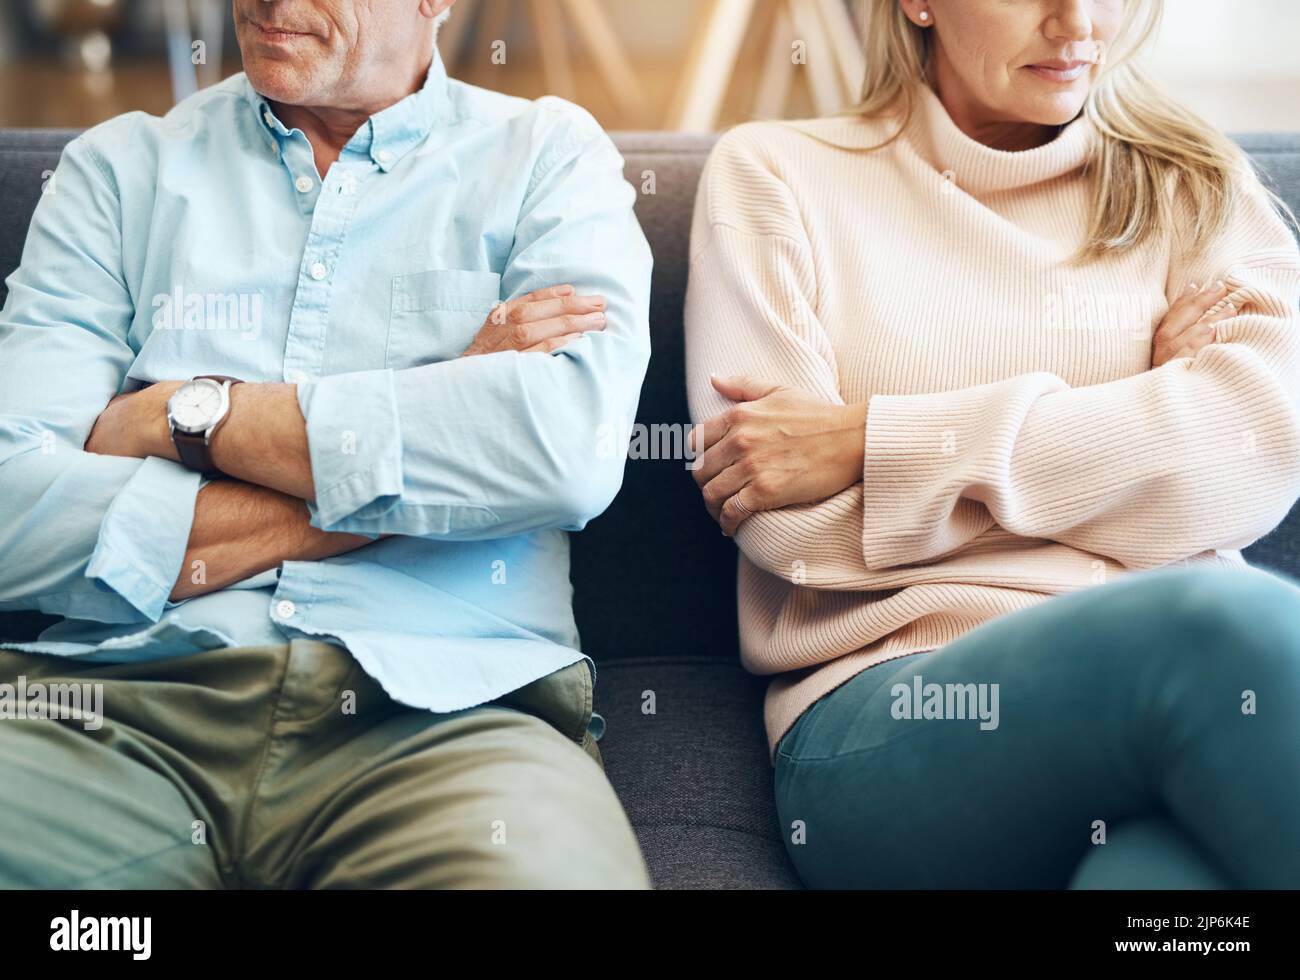 Les arguments ne sont jamais beaux. Un couple mature méconnaissable assis sur le canapé avec leurs bras repliés après un argument. Banque D'Images